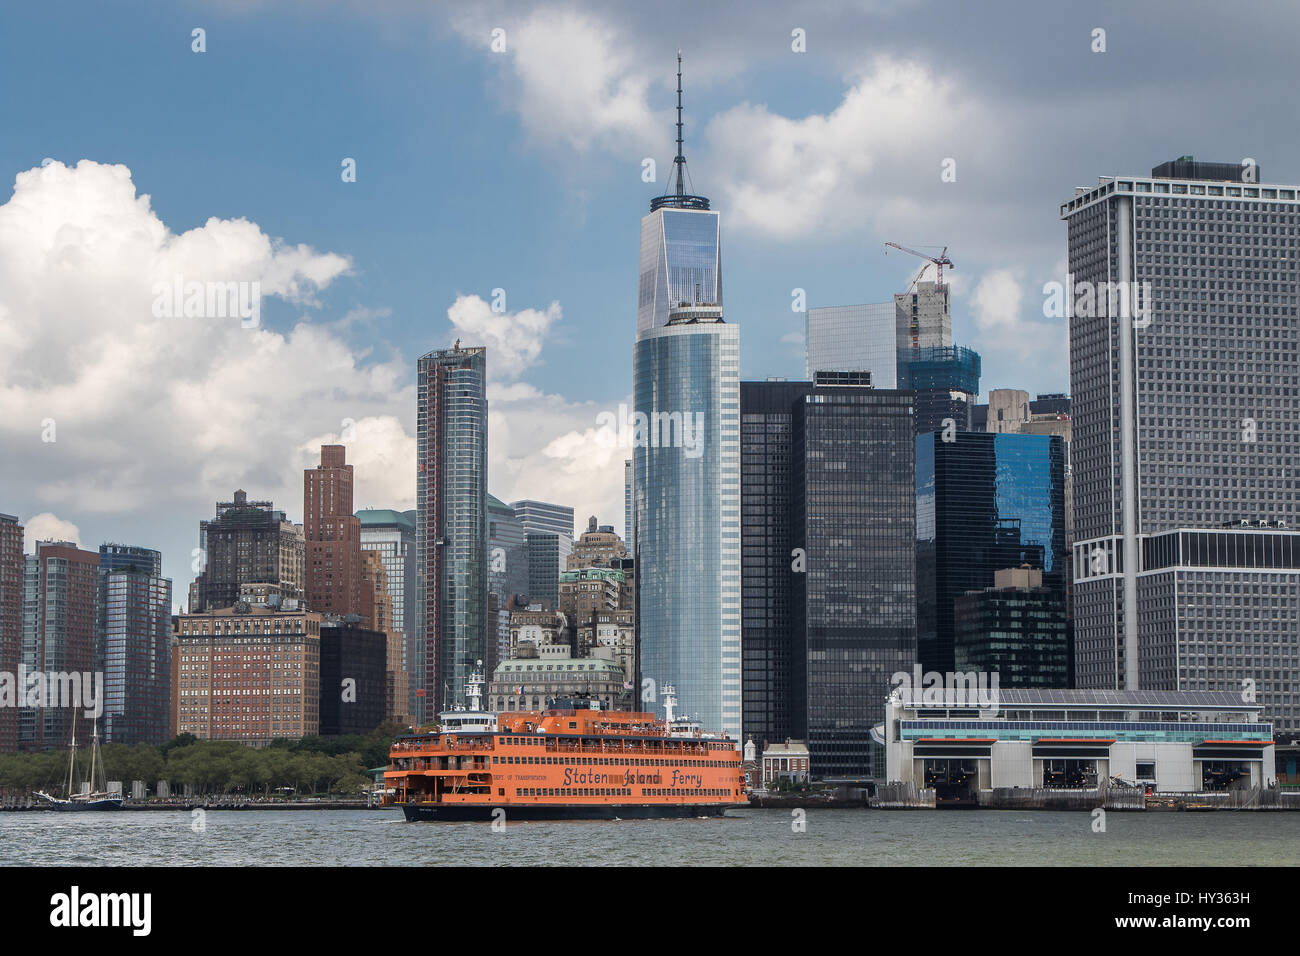 Un ferry pour Staten Island se prépare à accoster dans Manhattan. Banque D'Images